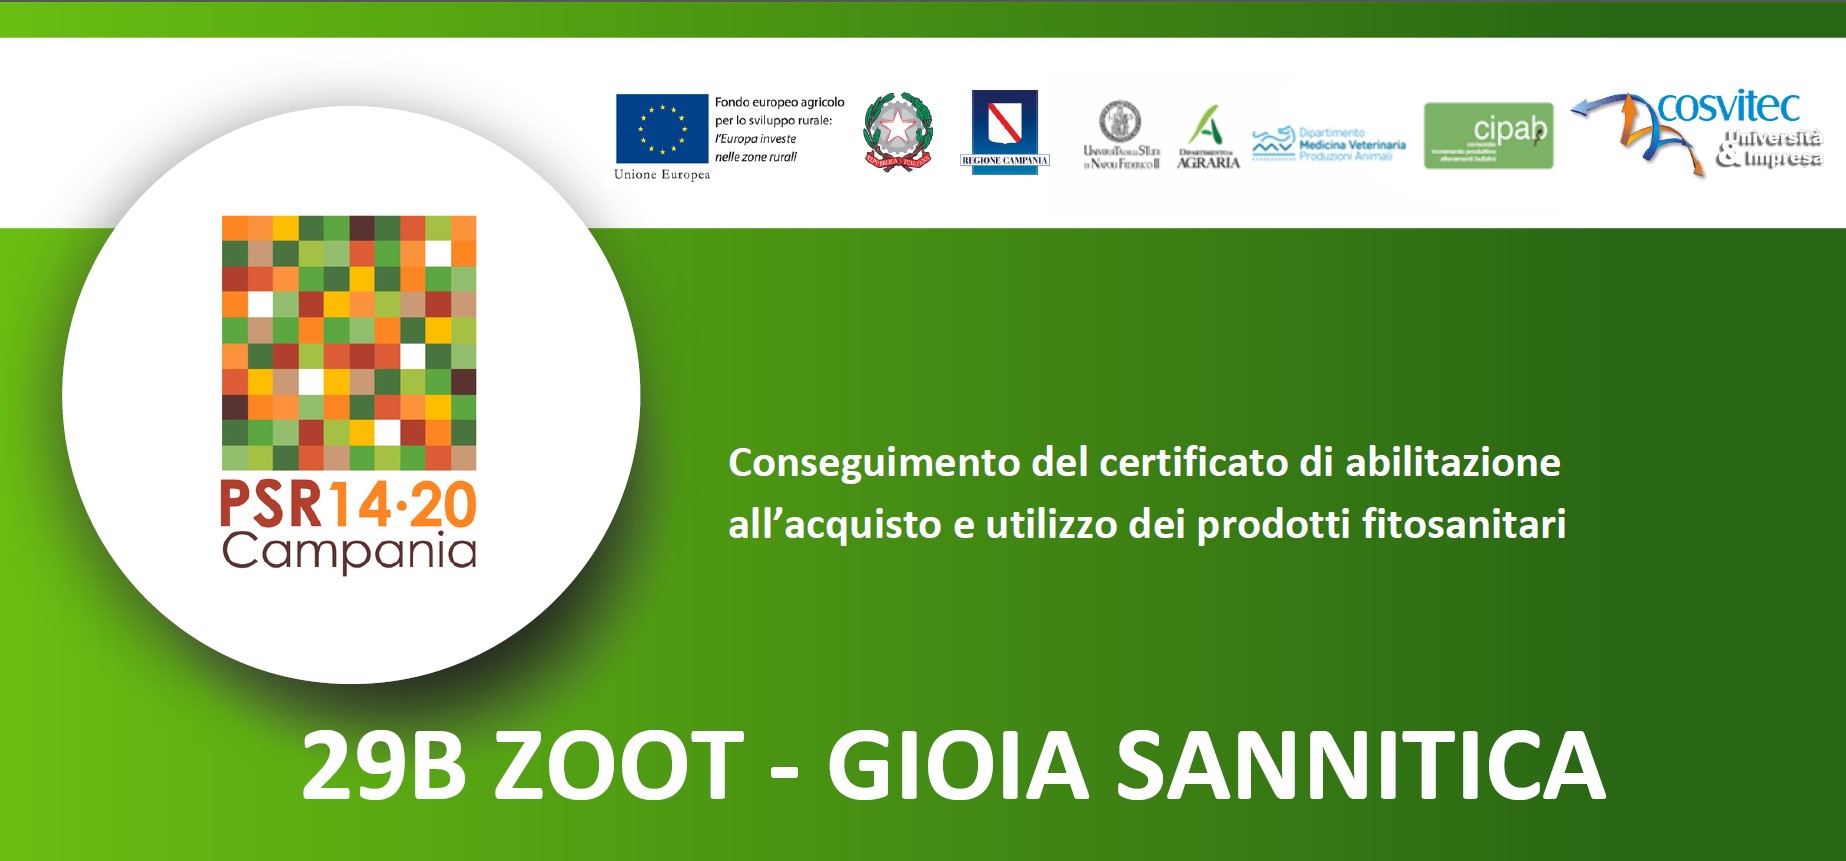 Conseguimento del certificato di abilitazione all’acquisto e utilizzo dei prodotti fitosanitari | 29B ZOOT Gioia Sannitica